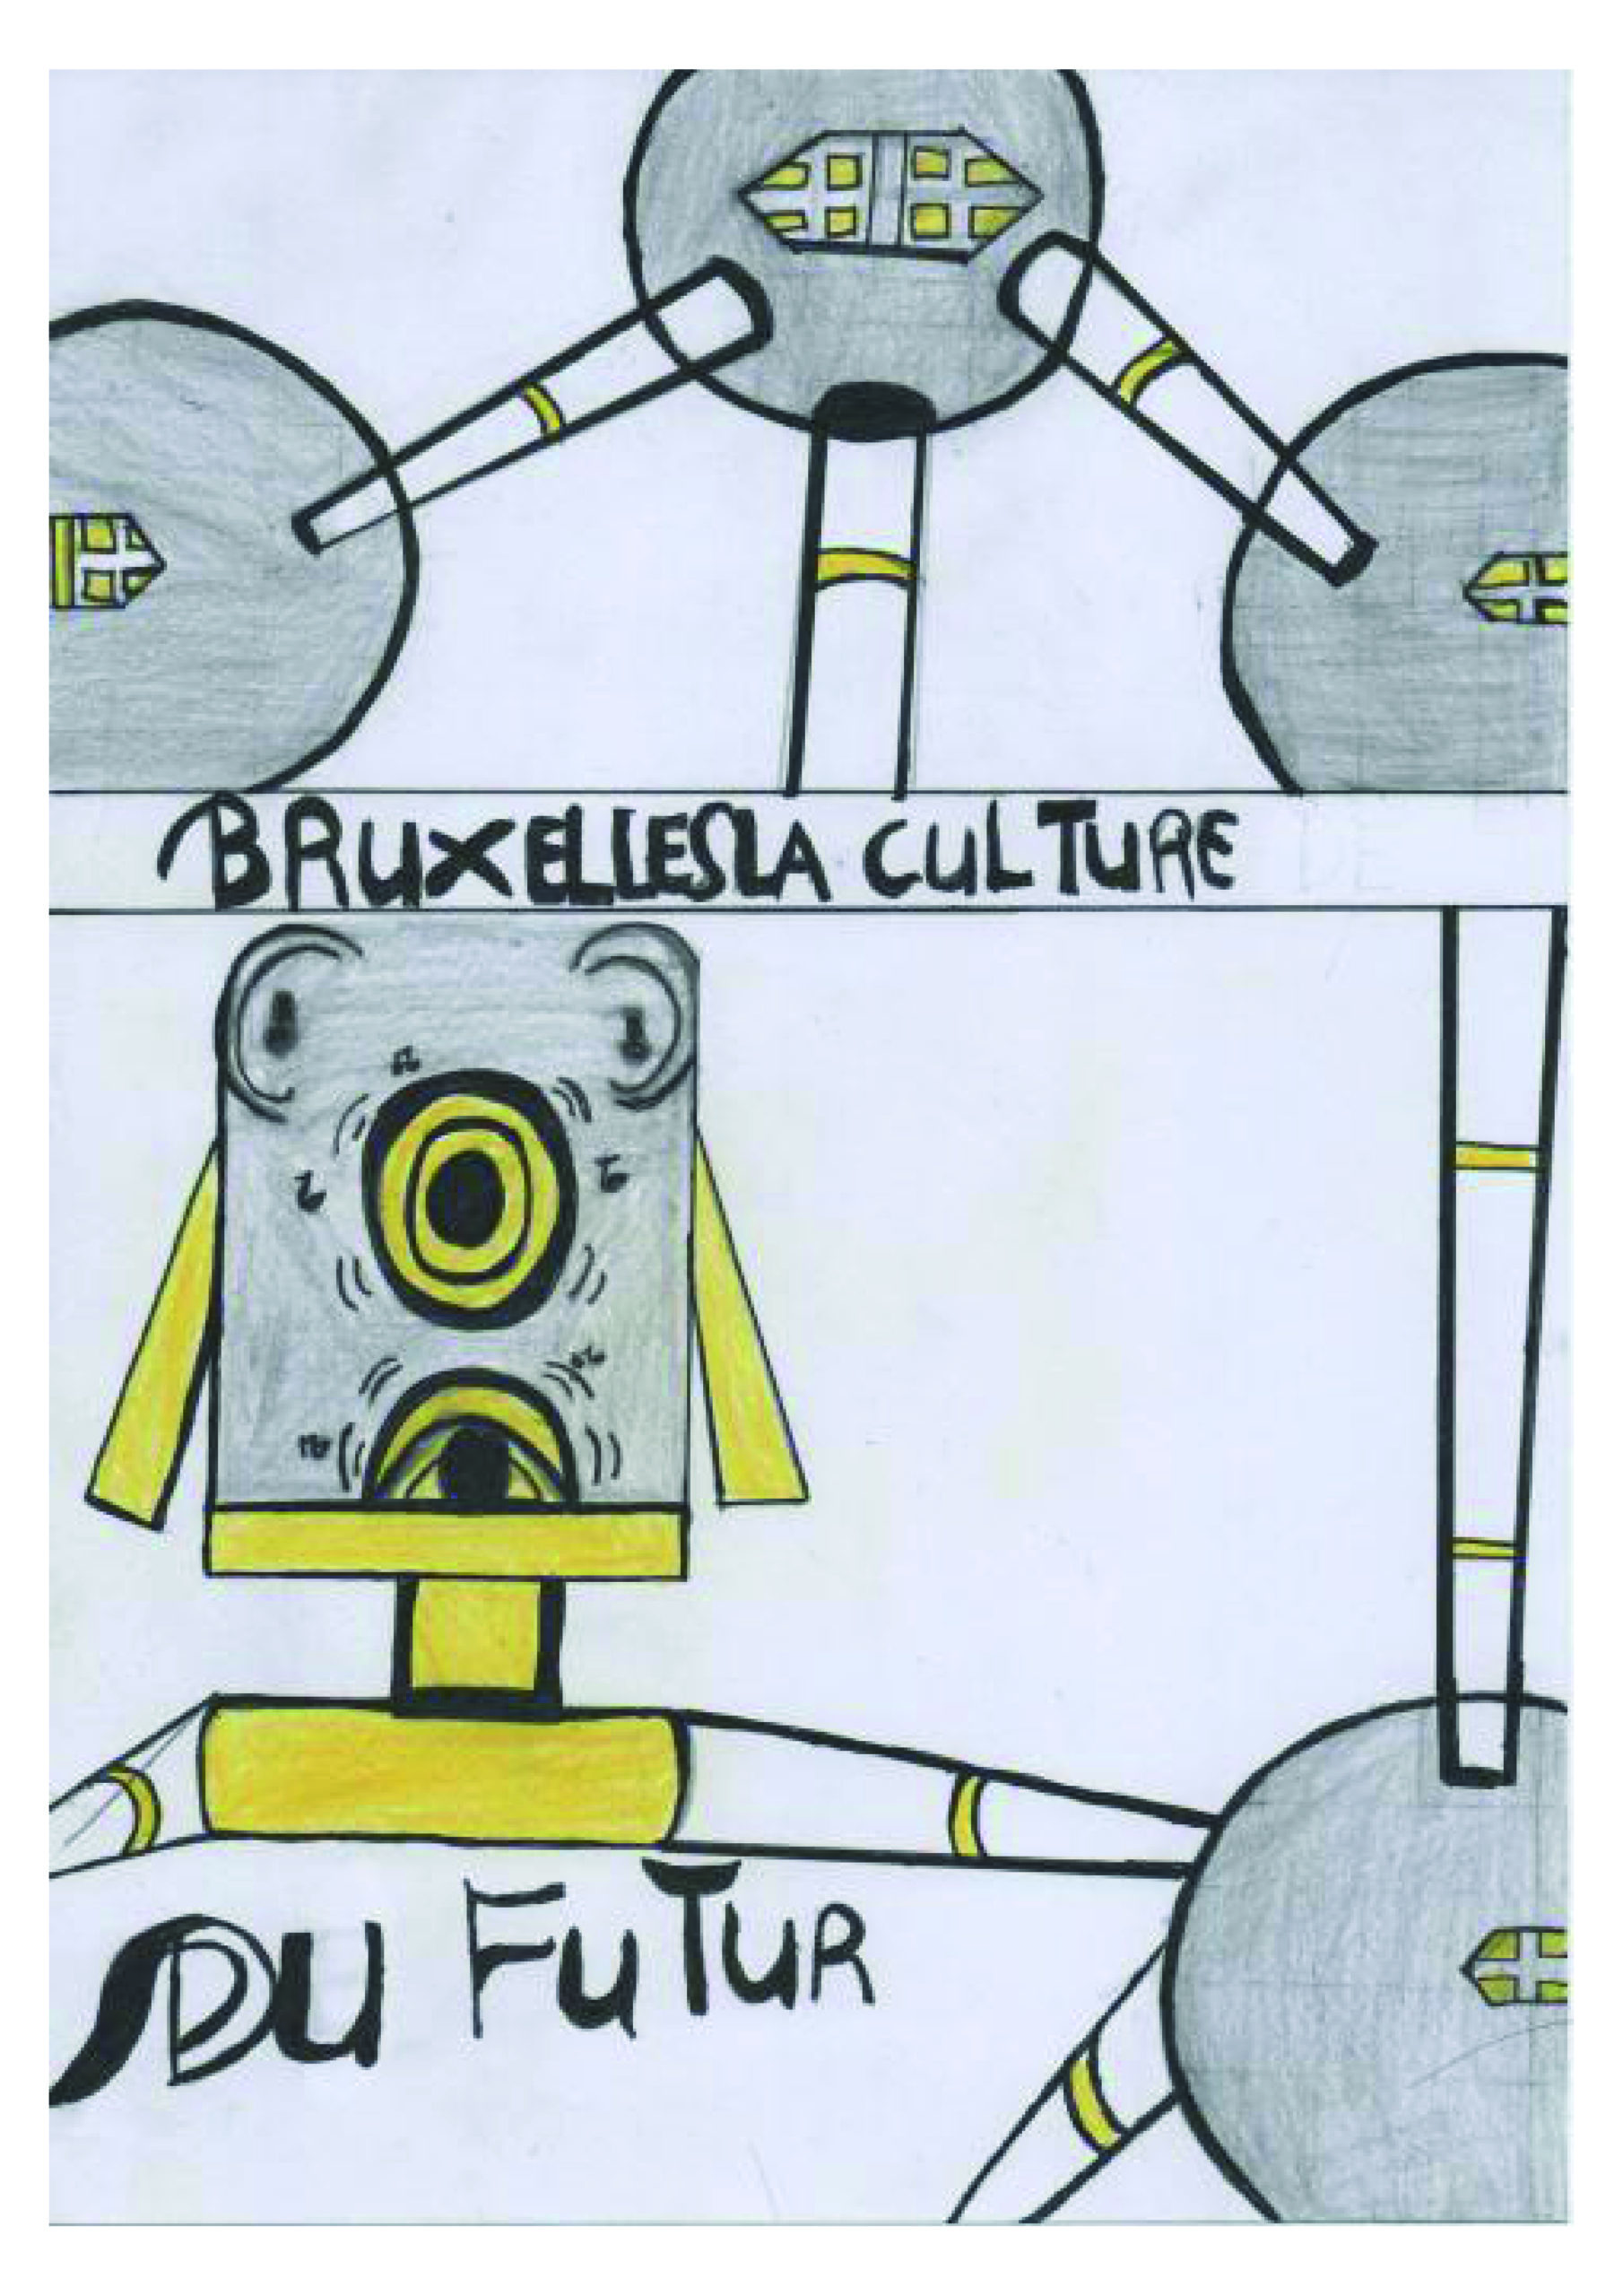 Bruxelles La Culture du Futur - Un robot qui une métaphore de la culture et l'atomium.